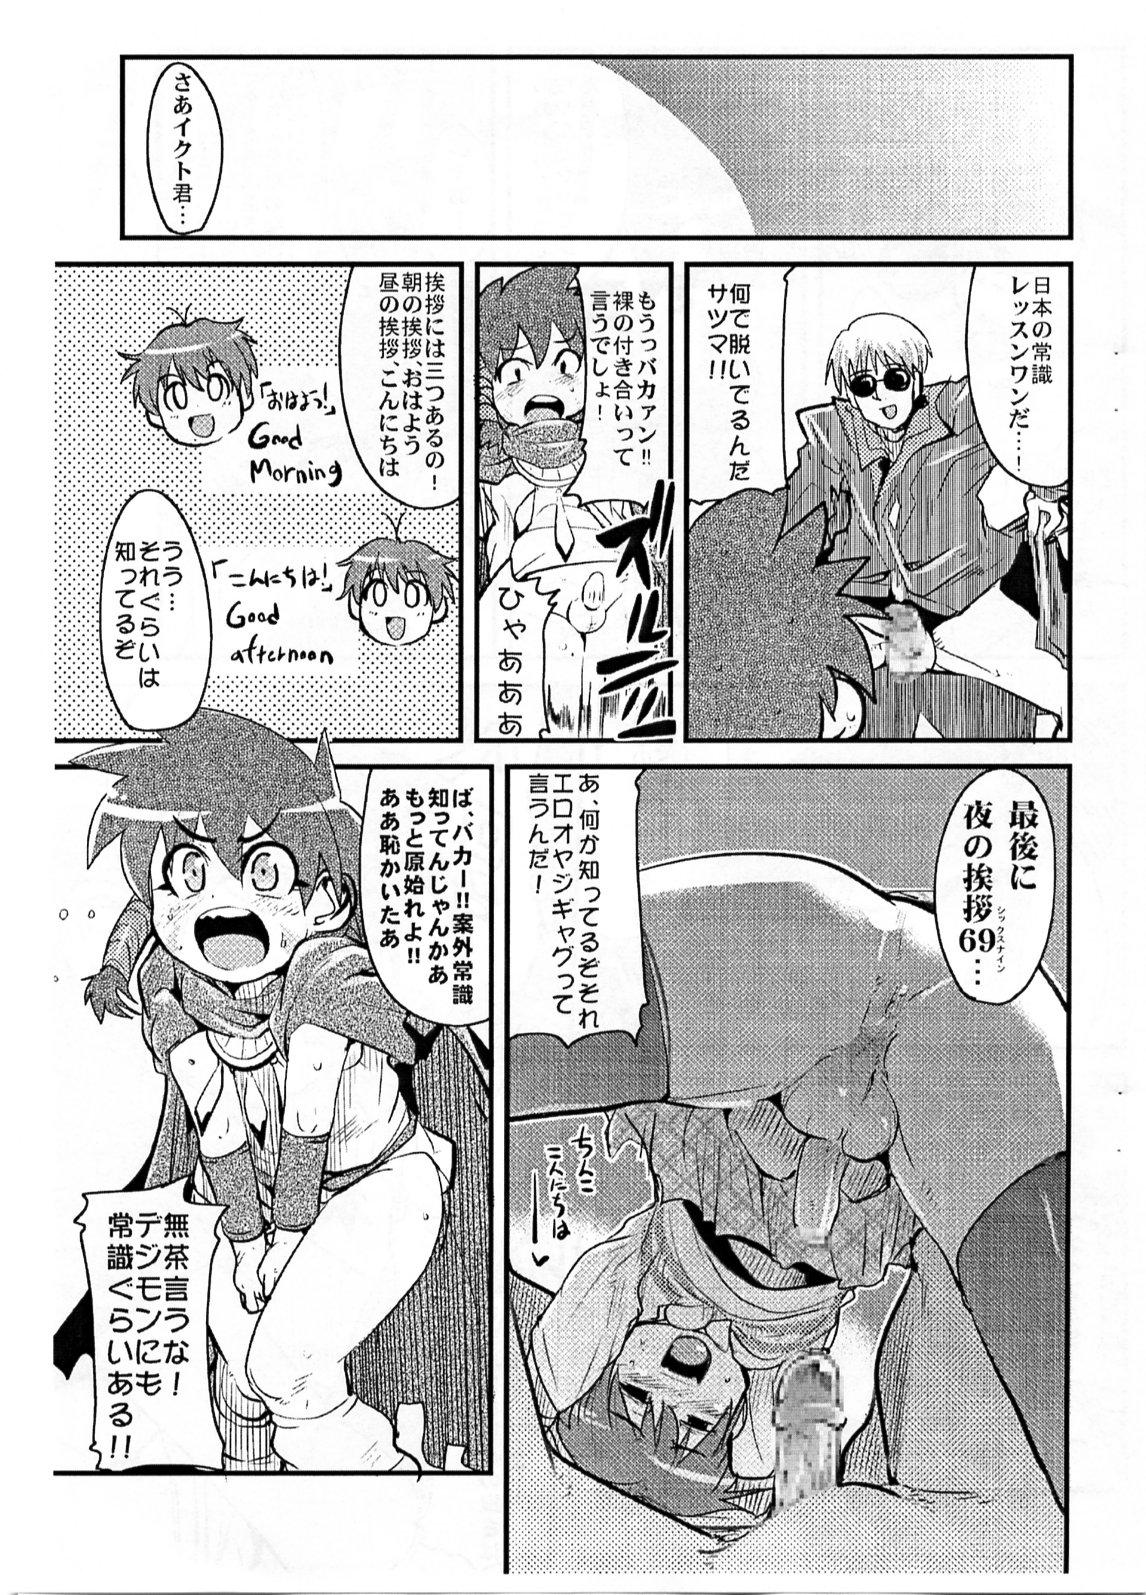 Couch Yaseiji ni iroiro oshieru hon nano da - Digimon savers Butt - Page 4